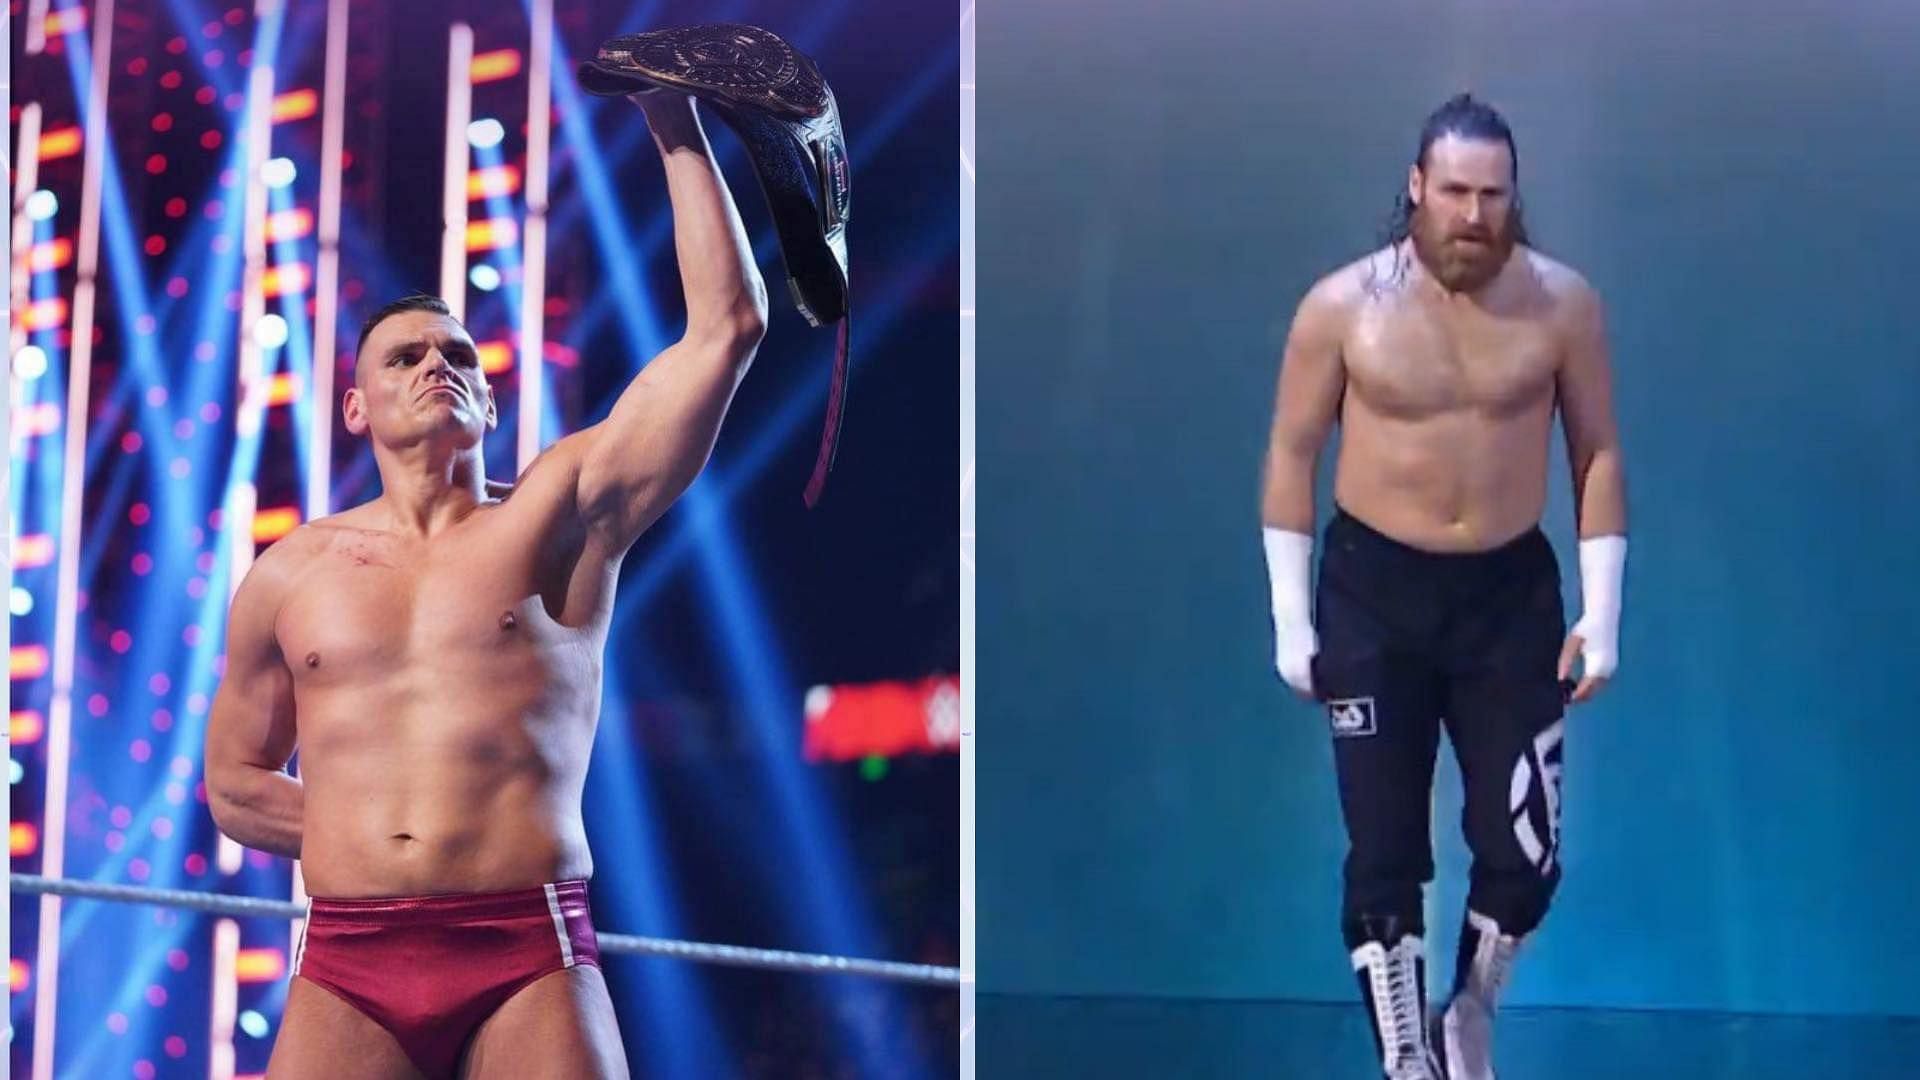 Sami Zayn won a huge match on WWE Monday Night RAW